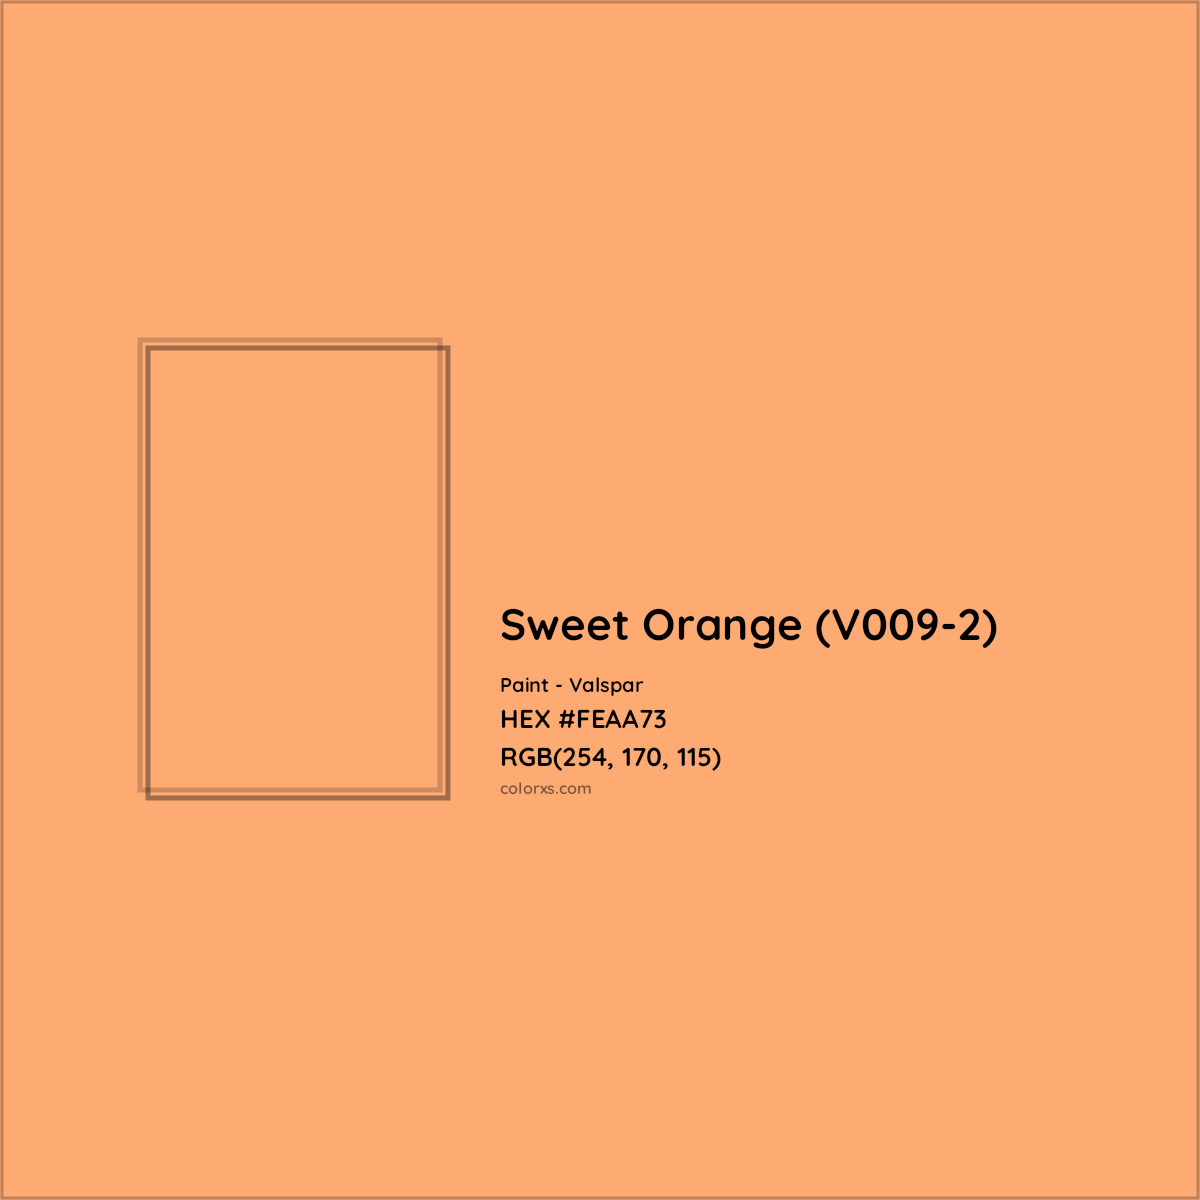 HEX #FEAA73 Sweet Orange (V009-2) Paint Valspar - Color Code